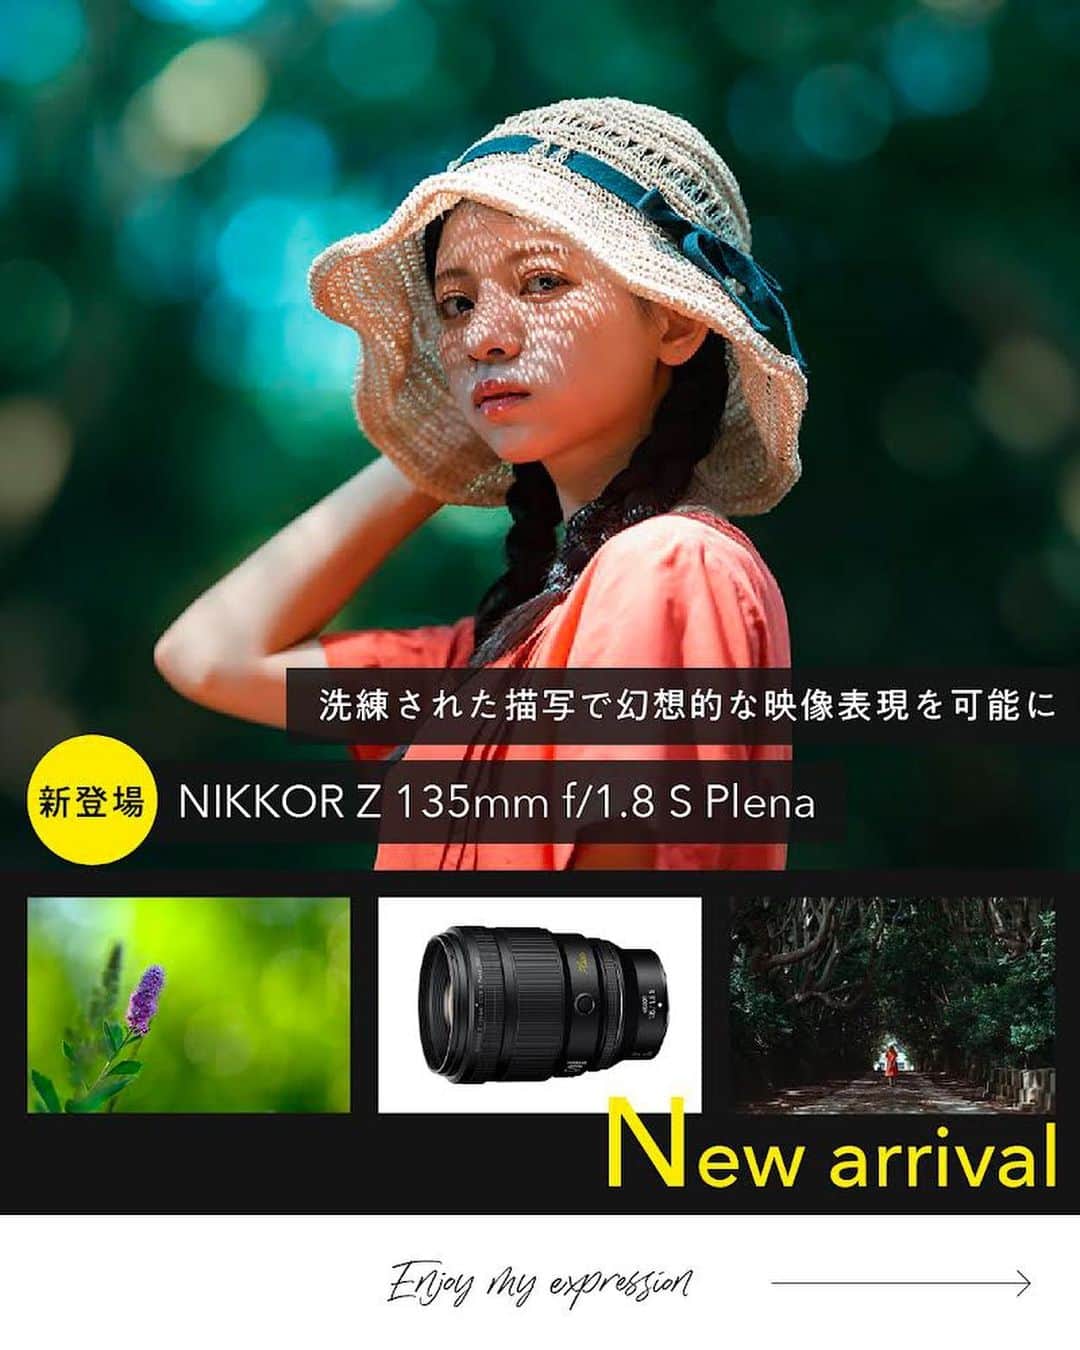 ニコンイメージングジャパン公式のインスタグラム：「本日から発売開始【NIKKOR Z 135mm f/1.8 S Plena】   洗練された描写で、幻想的な映像表現を可能にする中望遠単焦点レンズ「NIKKOR Z 135mm f/1.8 S Plena」が新登場。   NIKKOR Z 58mm f/0.95 S Noctに続く、固有名称を冠した2本目のレンズ。 「Plena」は、空間が満たされているという意味を持つラテン語、「Plenum」に由来して名づけられました。   開放F値1.8から円形度の高いボケ形状を実現。Z マウントのポテンシャルを存分に活かしたS-Lineレンズ屈指の解像度で被写体を立体的に描写します。   画面全体が光に満ち溢れ、「主題の輝き」と「きれいなボケ」が調和した幻想的な表現が可能に。 これまでにない映像体験を通して、創造性を最大限に引き出します。   固有名称を冠するにふさわしいこだわりが注ぎ込まれた、比類のない描写力を達成した一台です。   このレンズで撮りたいものはなんですか？ぜひコメント欄で教えてください！   ＜製品名＞ NIKKOR Z 135mm f/1.8 S Plena   ＜製品情報＞ https://www.nikon-image.com/products/nikkor/zmount/nikkor_z_135mm_f18_s_plena/   #Nikon #ニコン #カメラ #camera #nikoncreators #新発売 #newrelease #新登場 #新製品 #新レンズ #レンズ #cameralens #単焦点レンズ #単焦点レンズの世界 #丸ボケ #玉ボケ #plena #中望遠レンズ #zシリーズ」